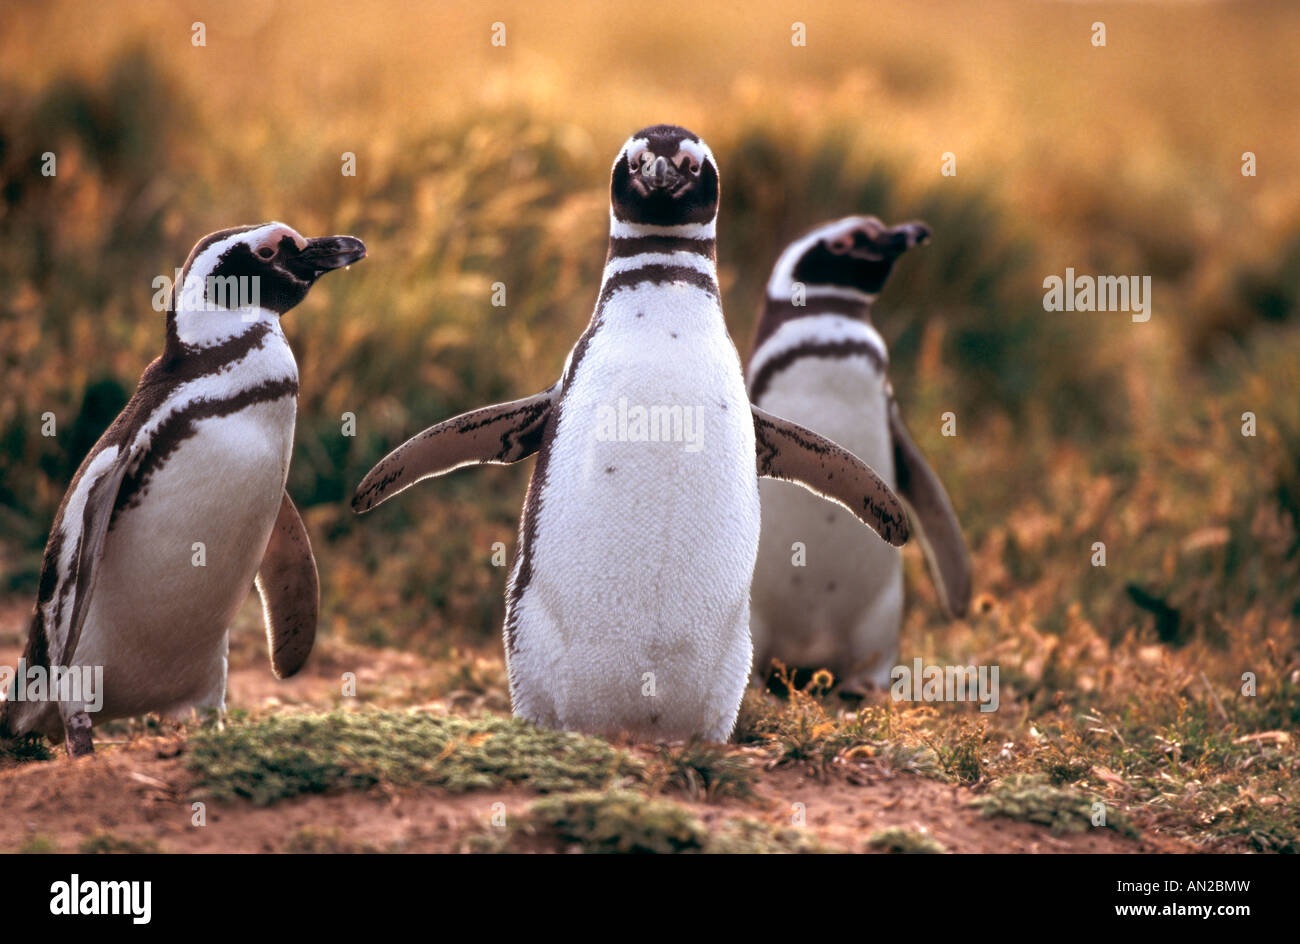 Pinguin Kolonie Magellanpinguine Seno Otway Patagonia Cile Spheniscus magellanicus Foto Stock